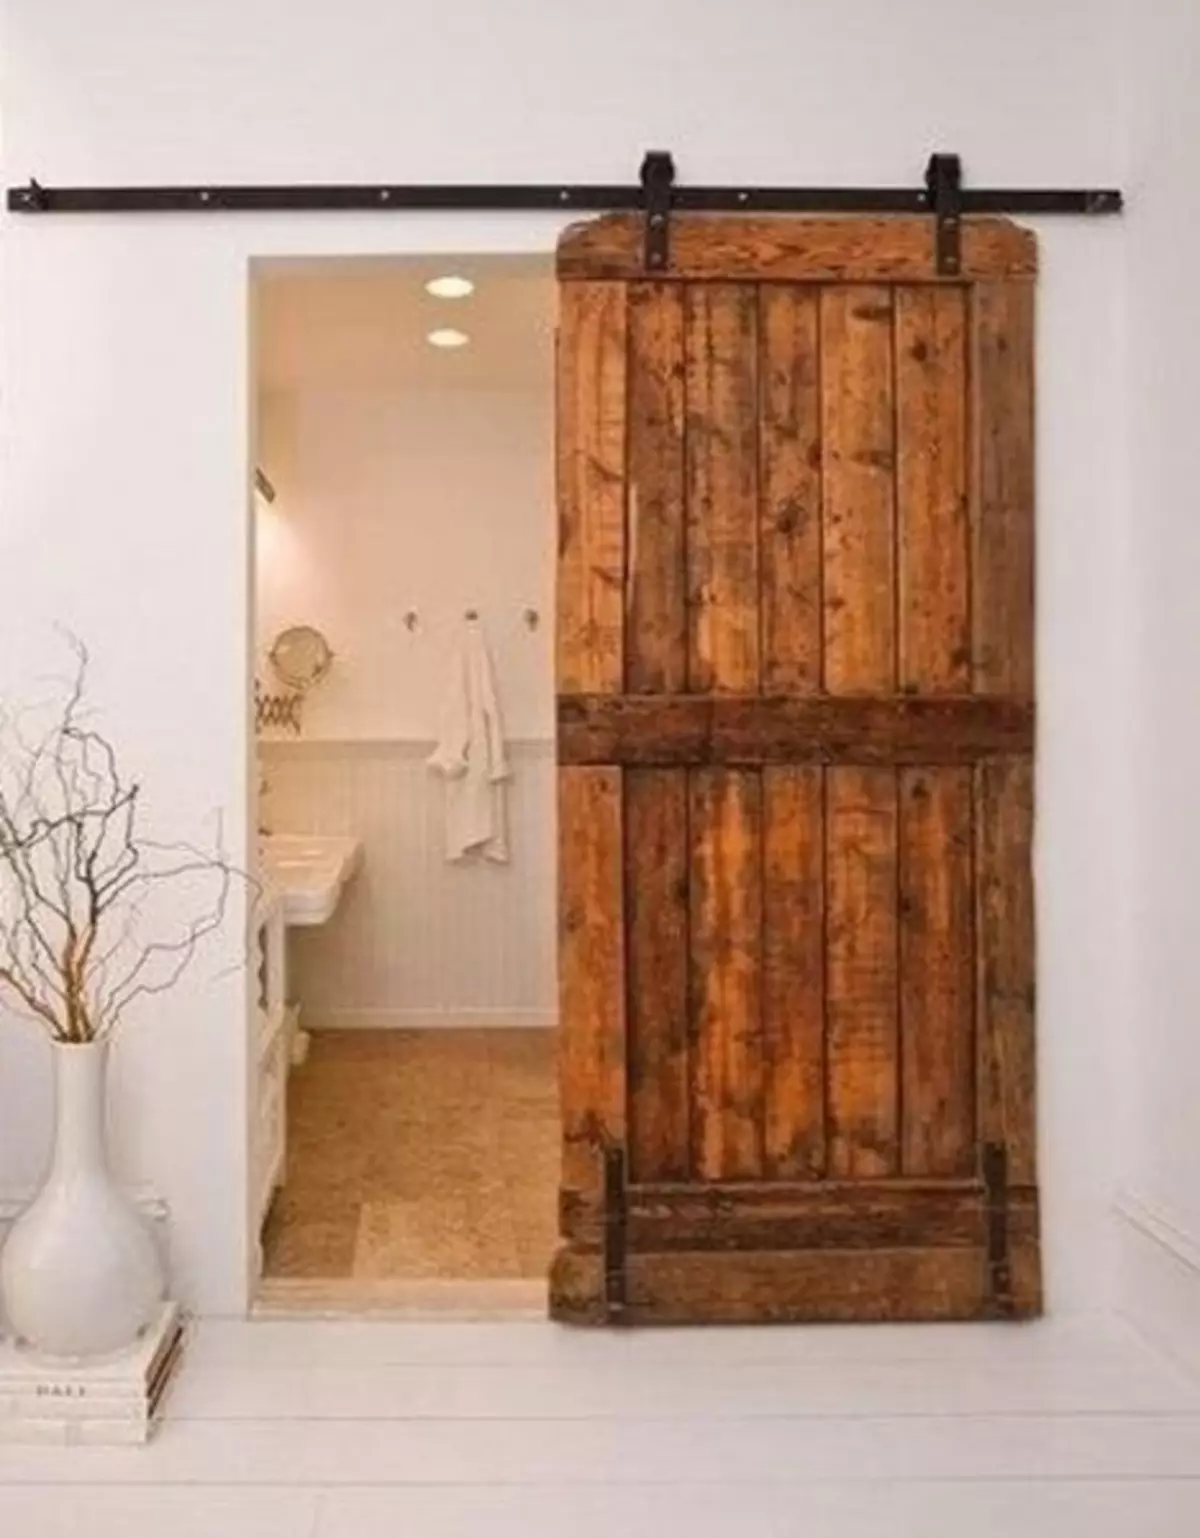 Remplacer les portes dans la salle de bain et les toilettes le faire vous-même